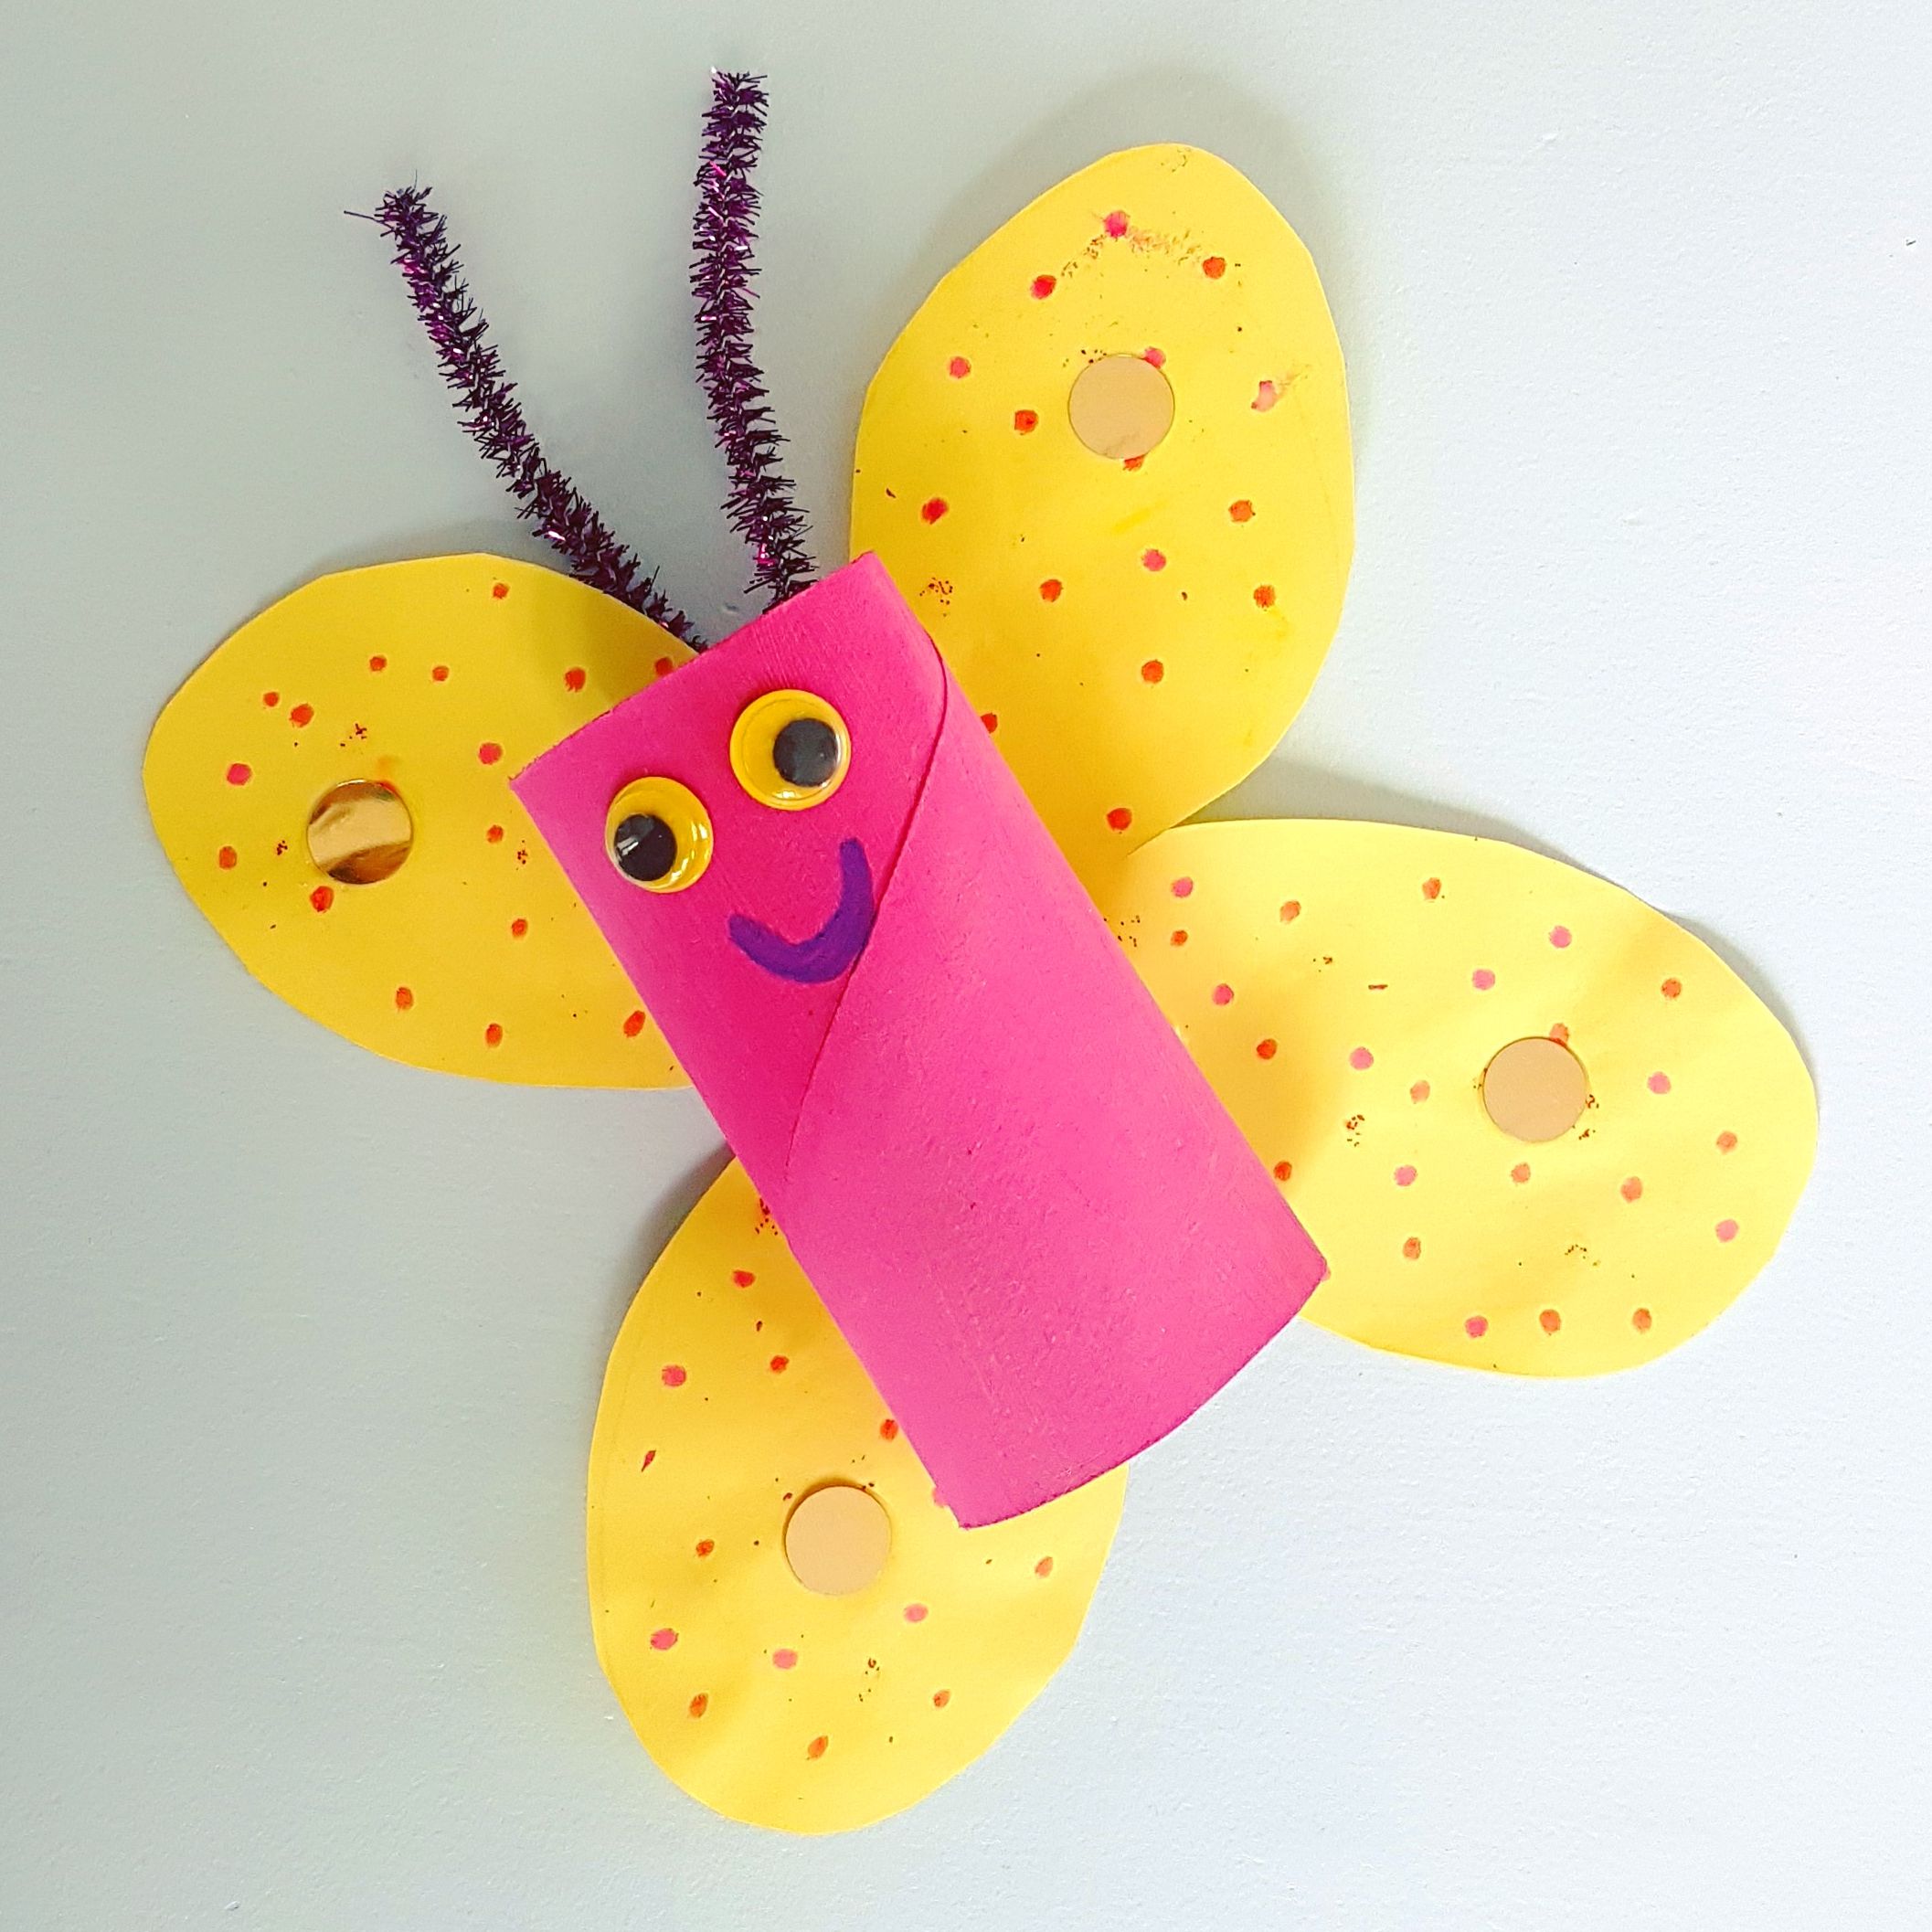 101 ideeën om te knutselen met kinderen, zoals deze vlinder knutselen